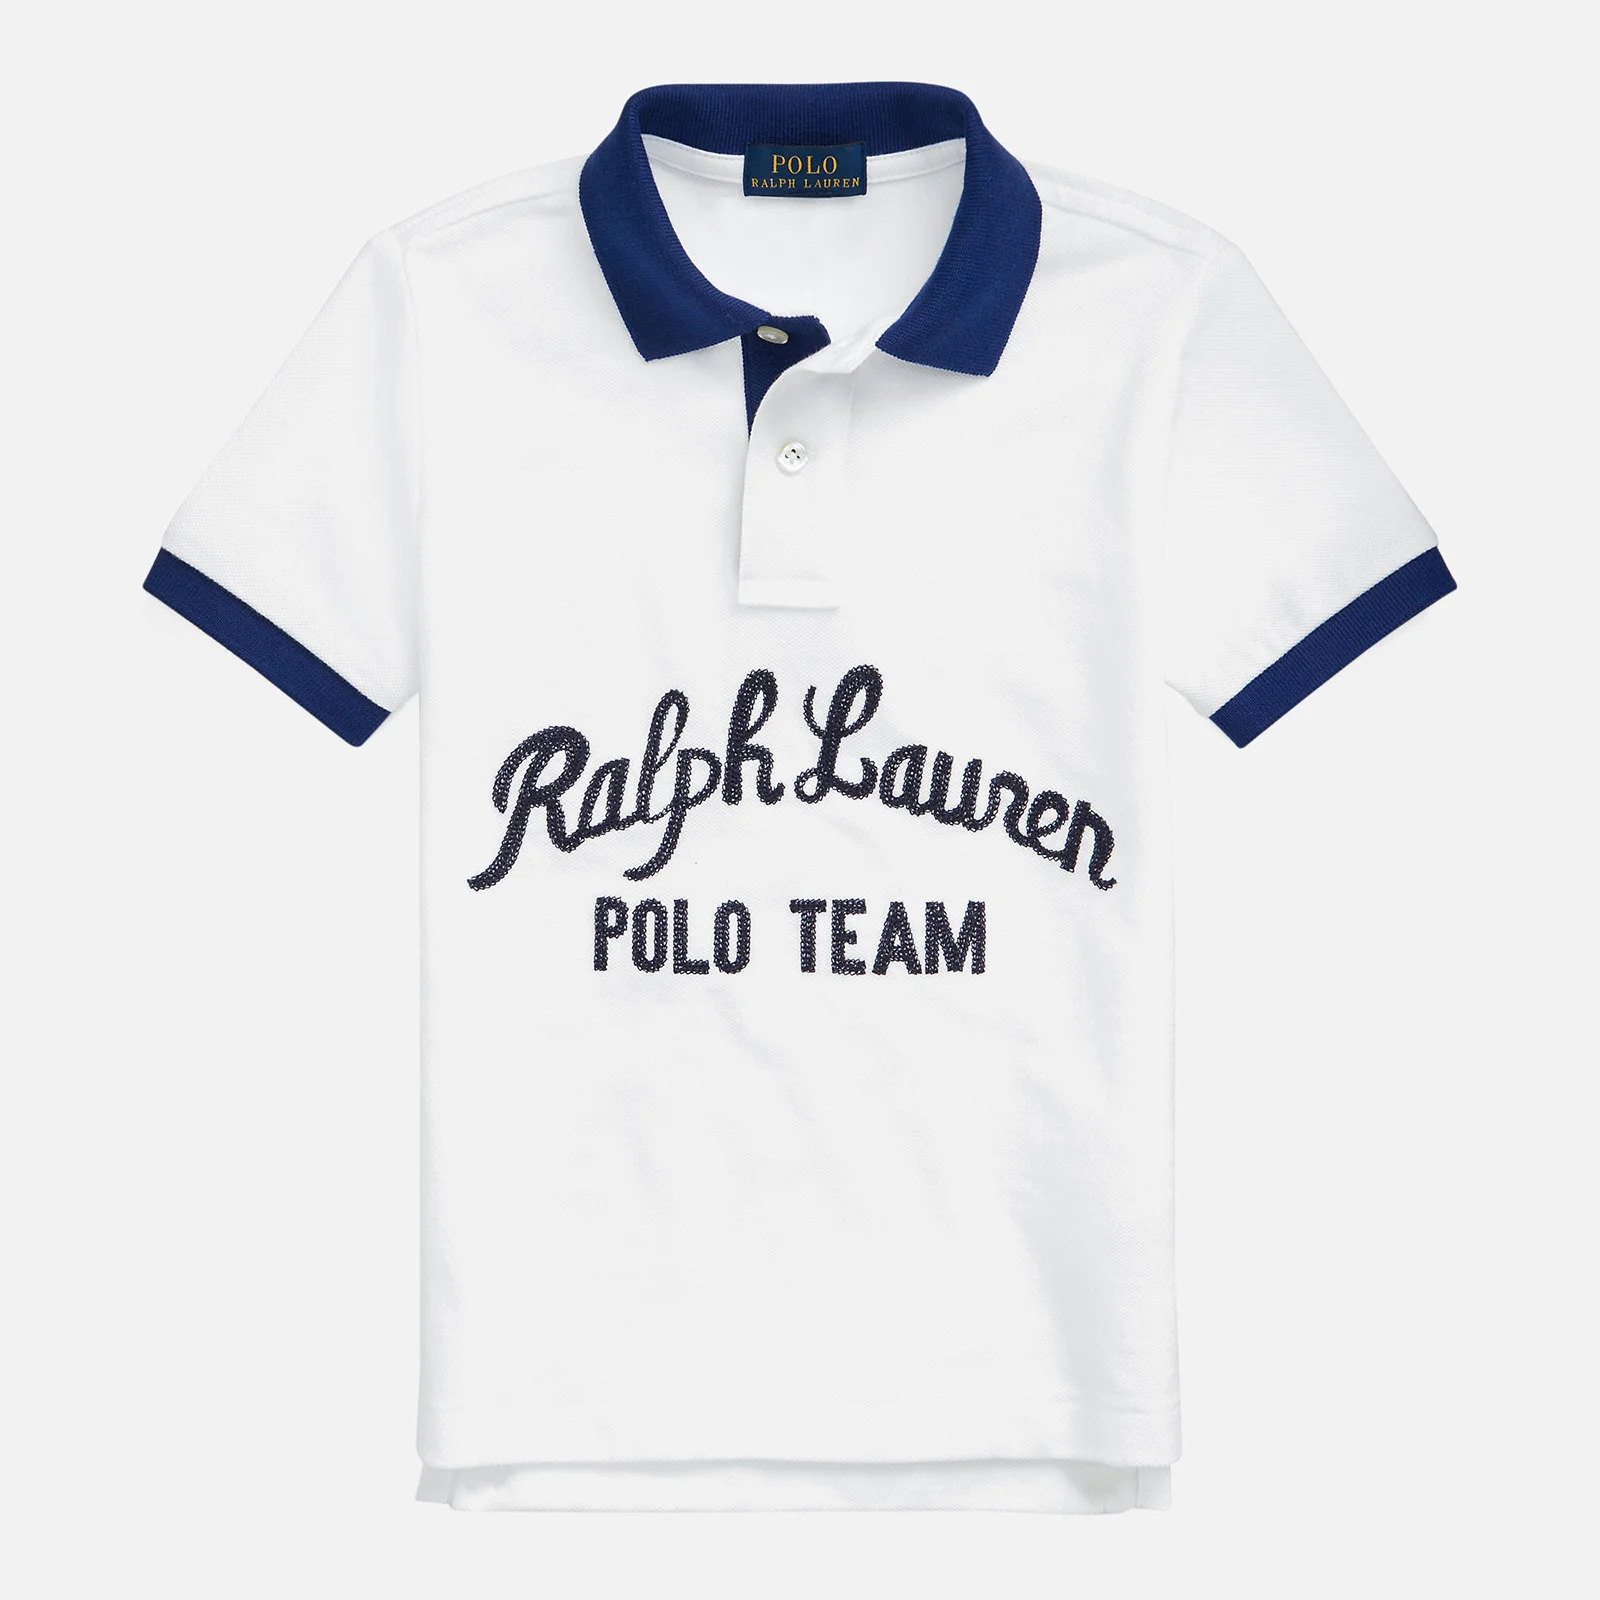 Polo Ralph Lauren Boys' Logo Polo Top - White Multi Image 1